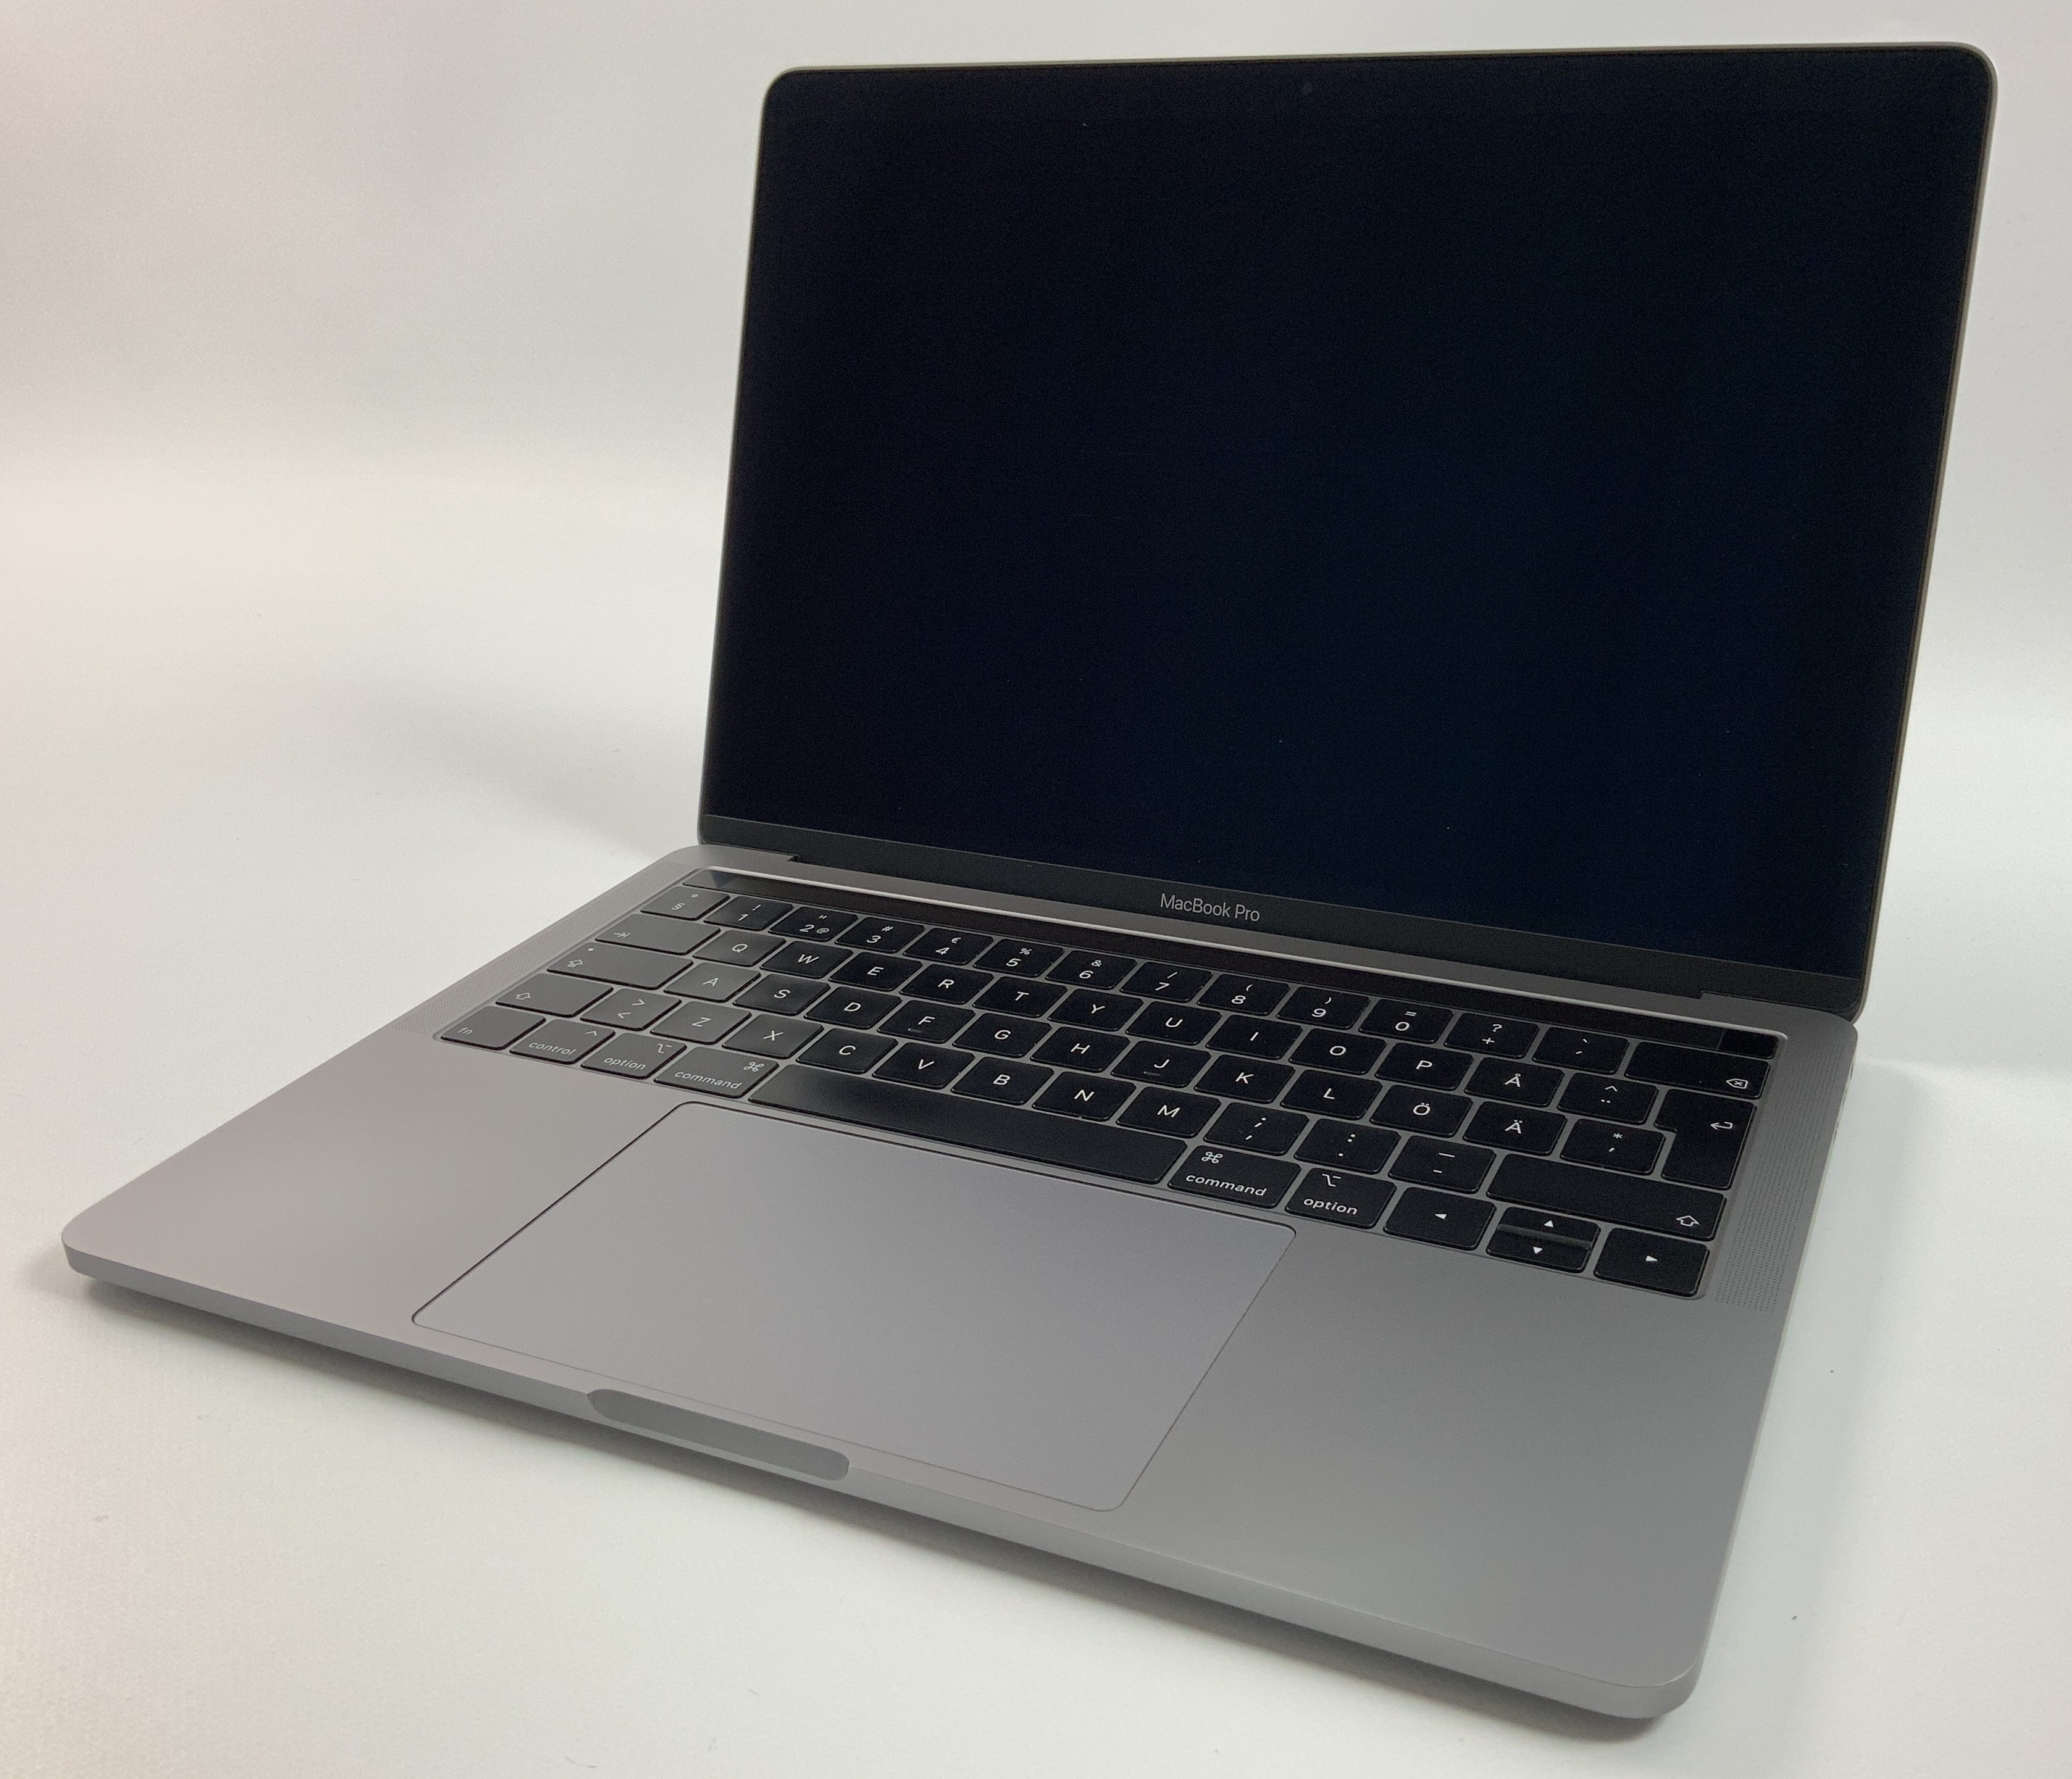 MacBook Pro 13" 4TBT Mid 2019 (Intel Quad-Core i5 2.4 GHz 16 GB RAM 512 GB SSD), Space Gray, Intel Quad-Core i5 2.4 GHz, 16 GB RAM, 512 GB SSD, Afbeelding 1